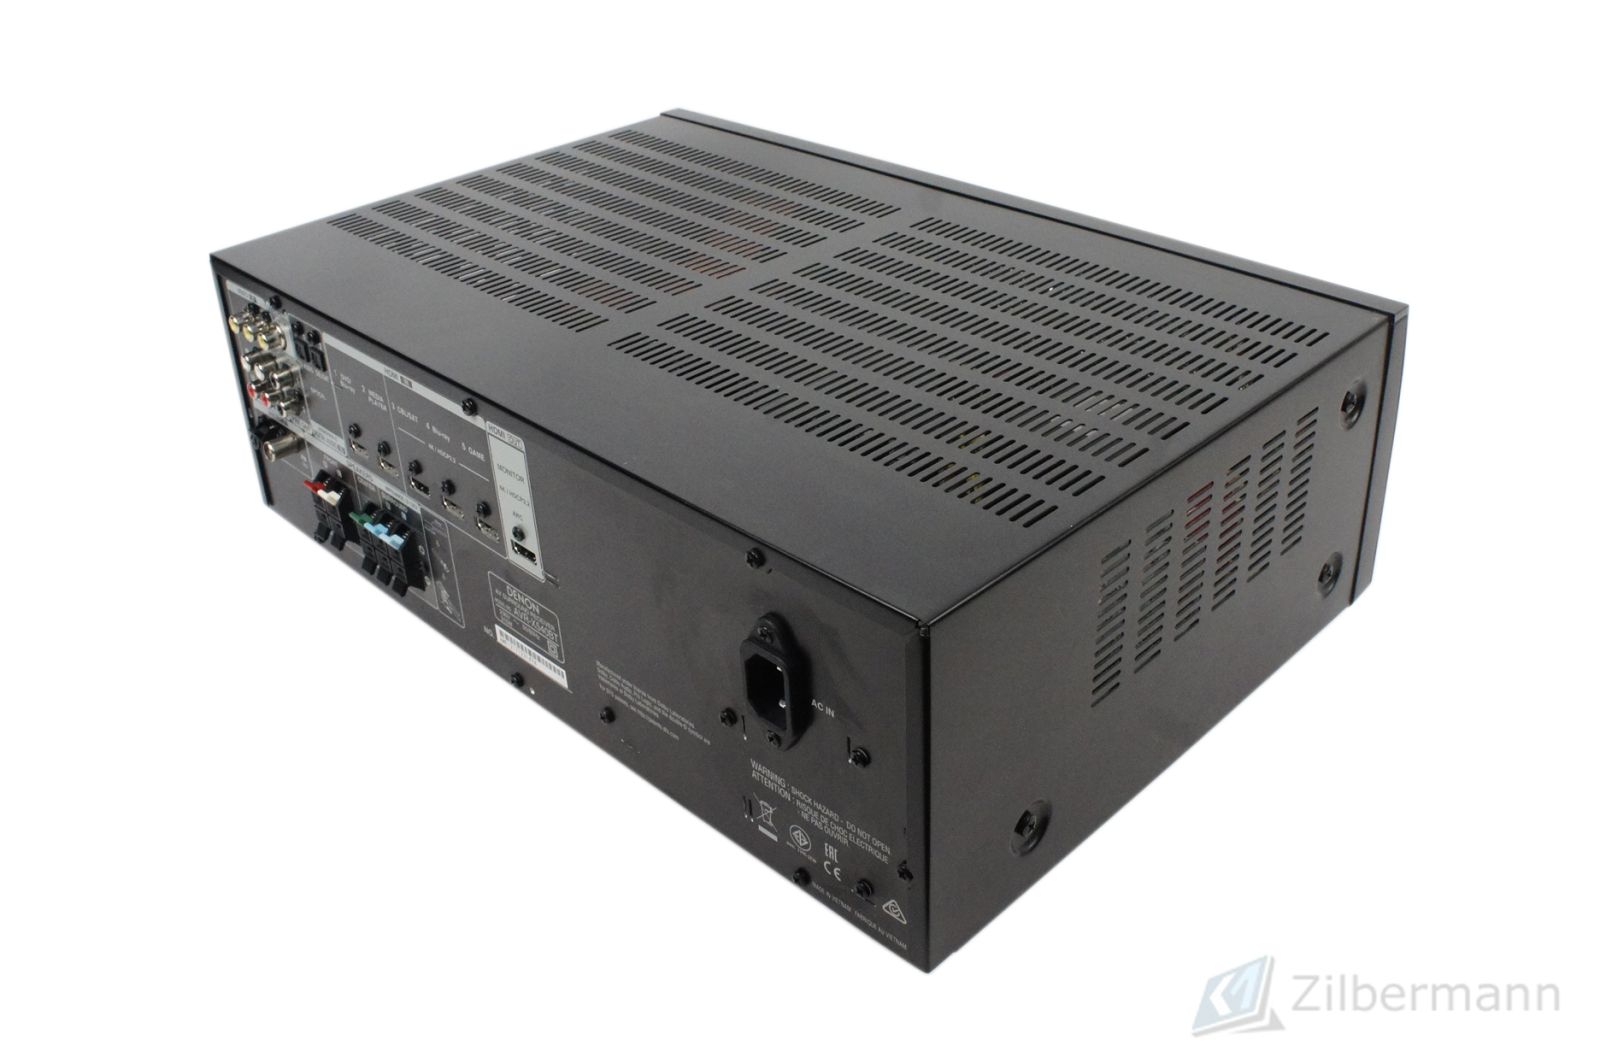 Denon_AVR-X540BT_5.2-Kanal_Full_4K_Ultra_HD_AV-Receiver_08